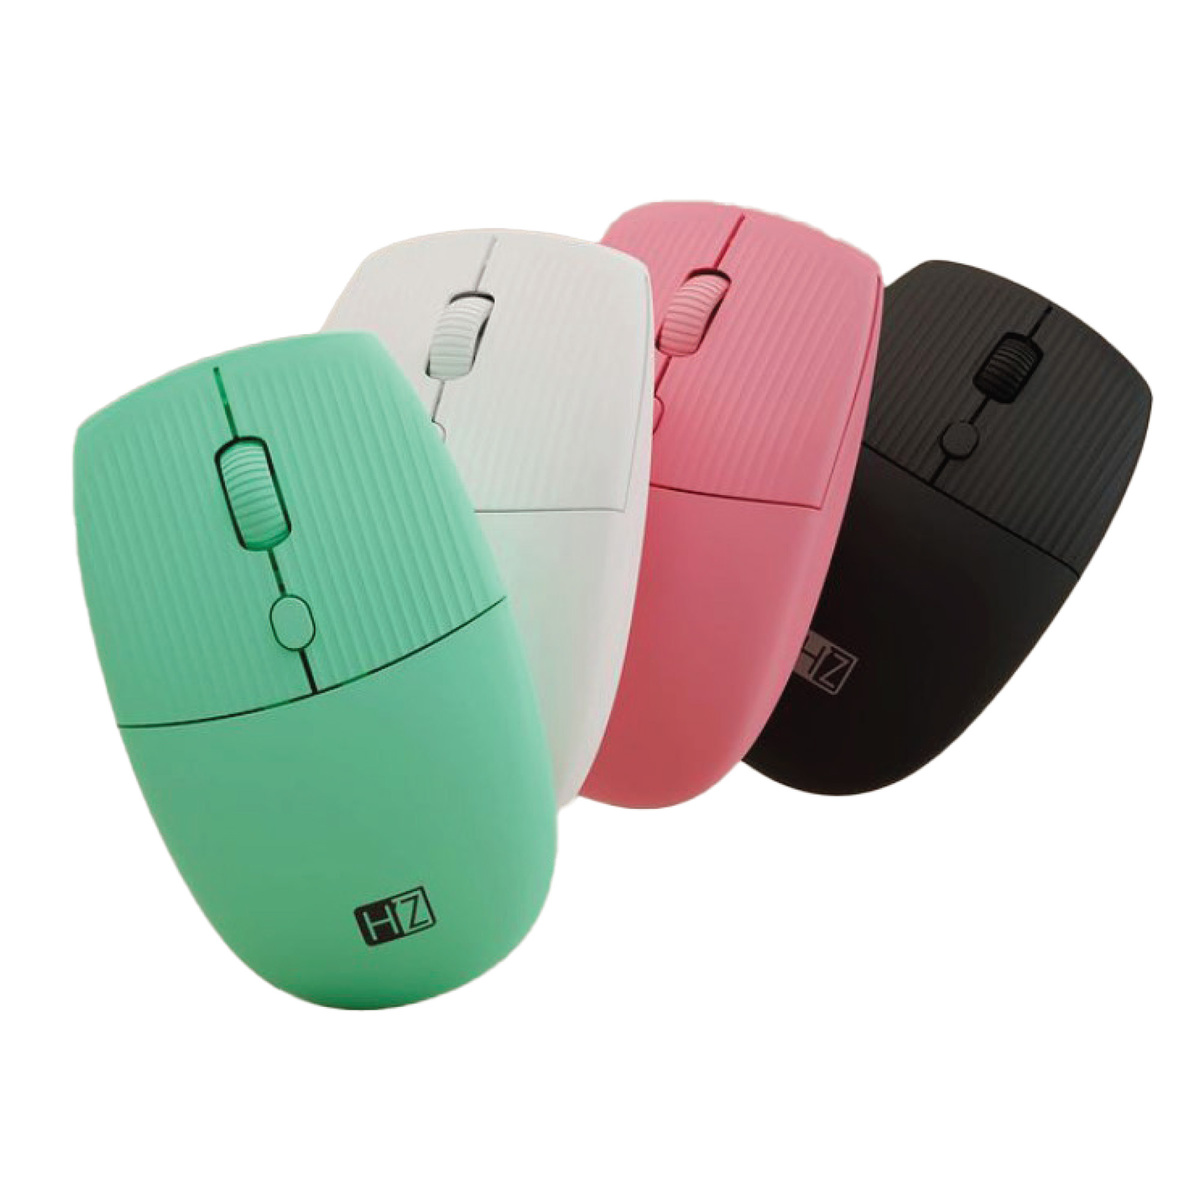 Heatz Wireless Mouse 1600 DPI-ZM13 Assorted